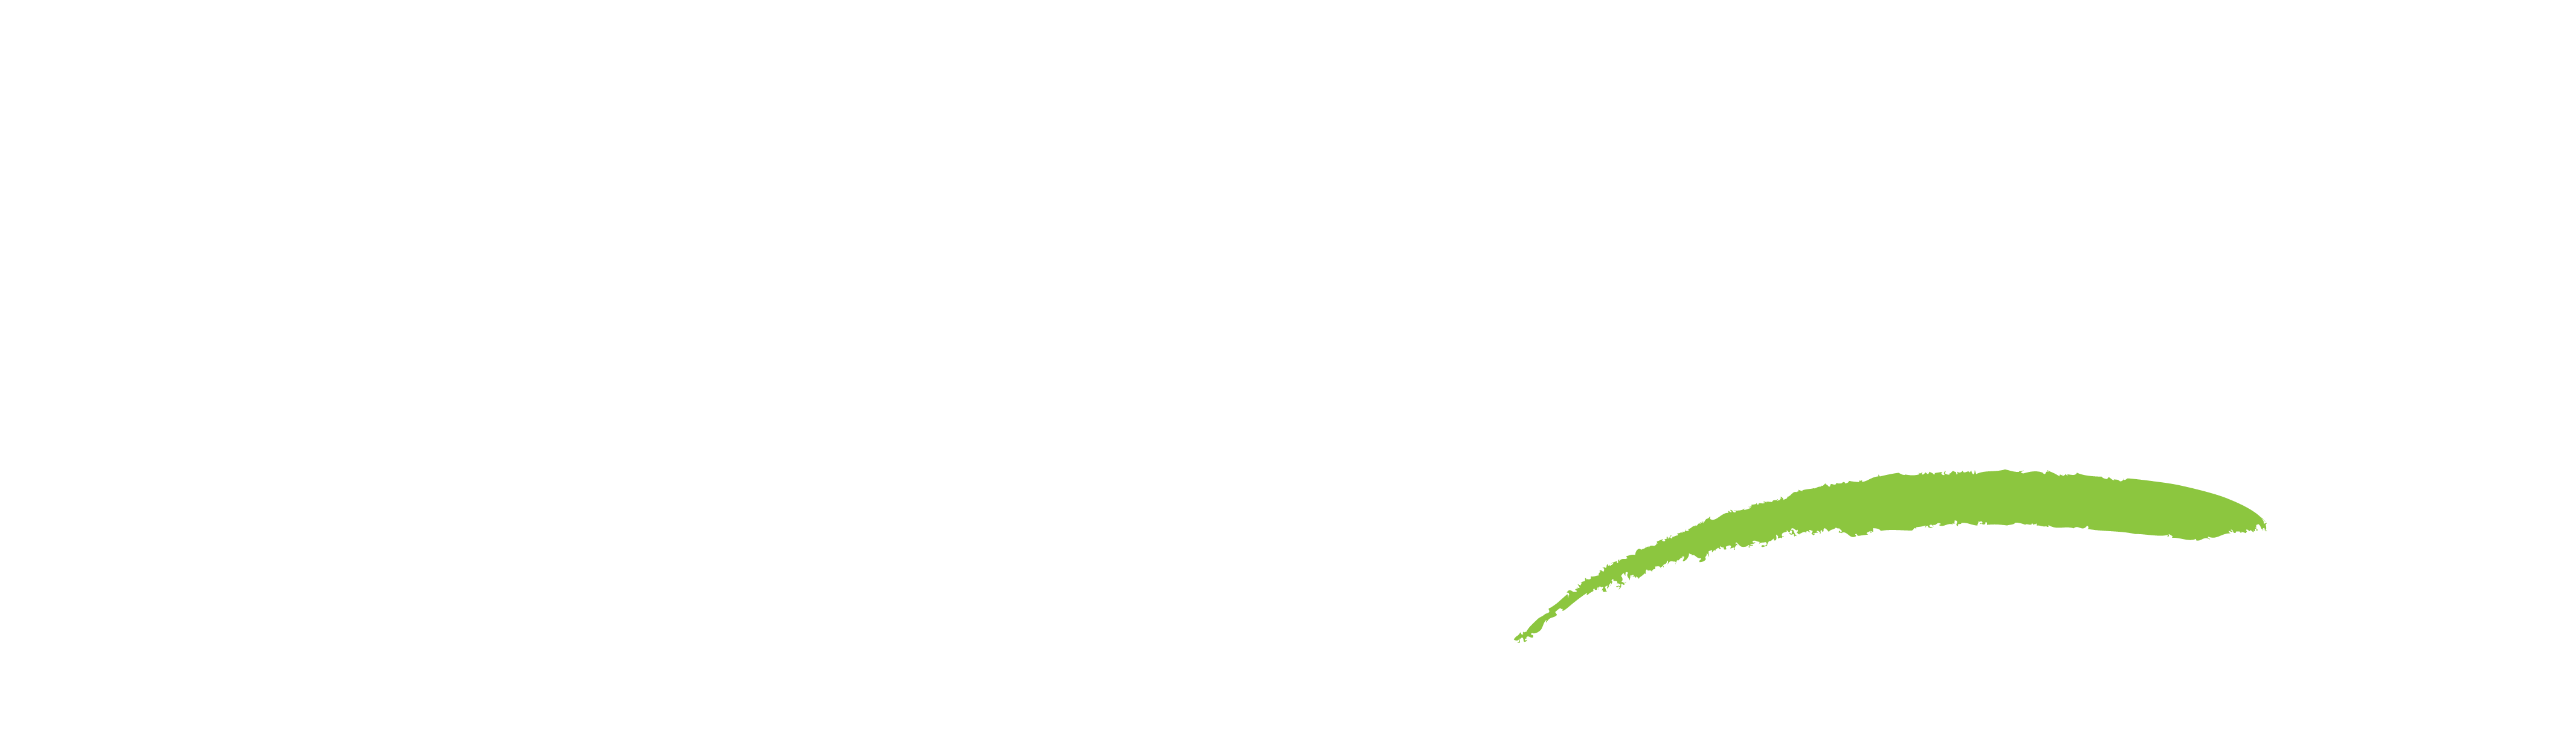 Paytime - 30th Anniversary Logo